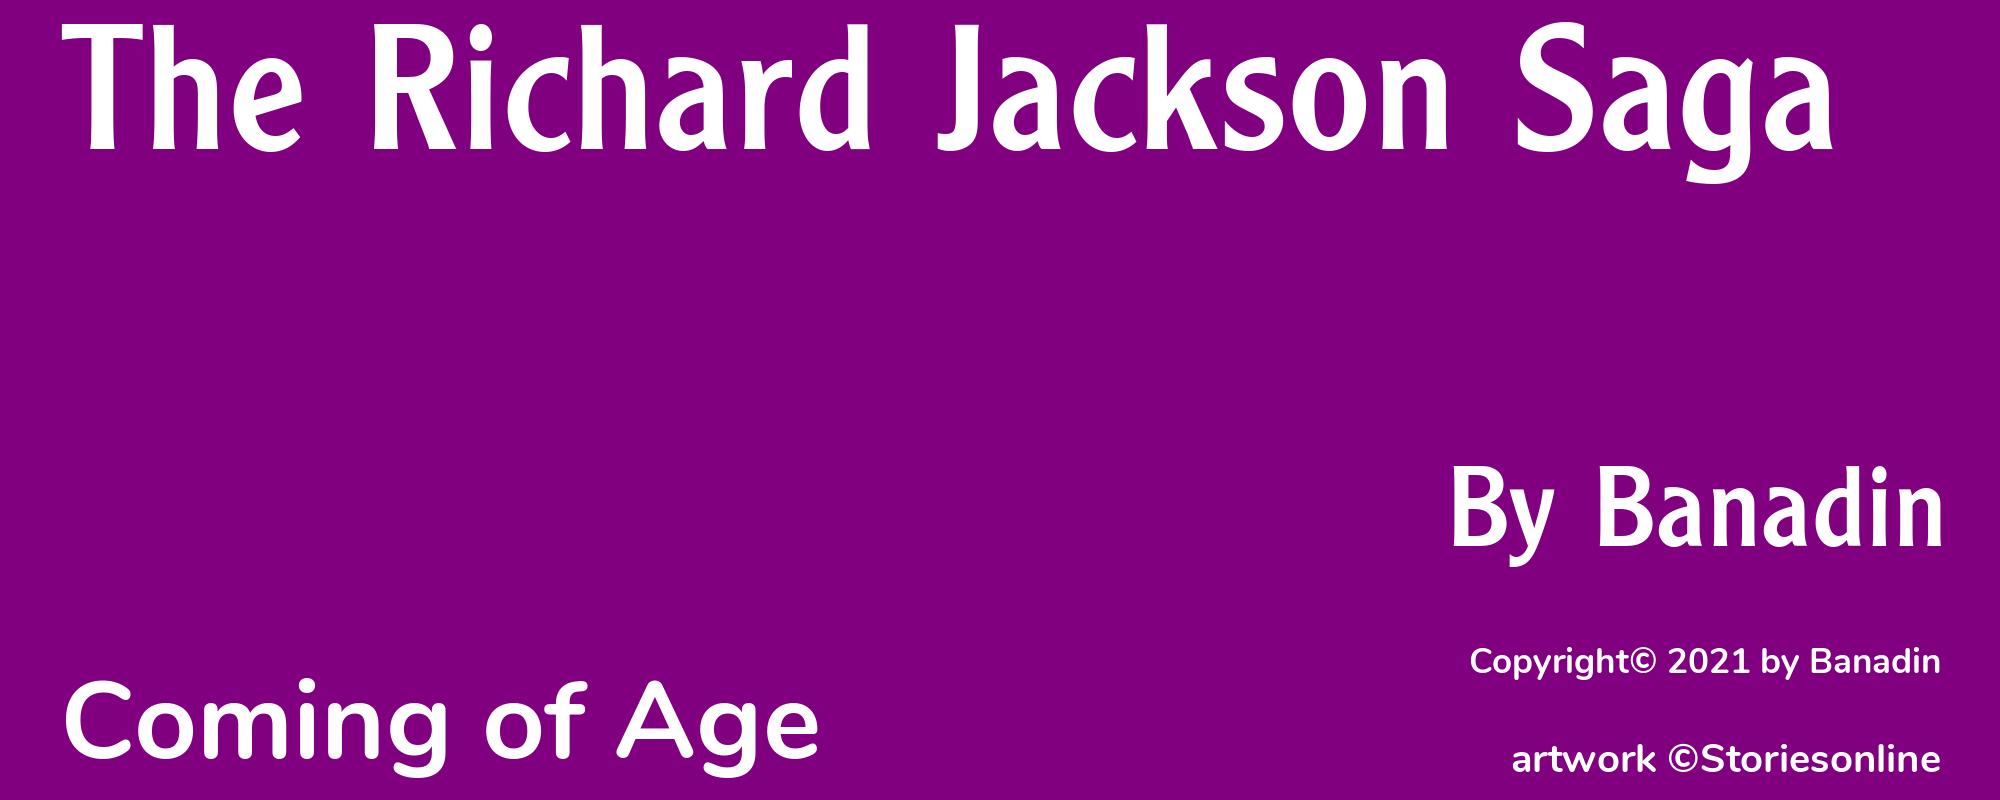 The Richard Jackson Saga - Cover